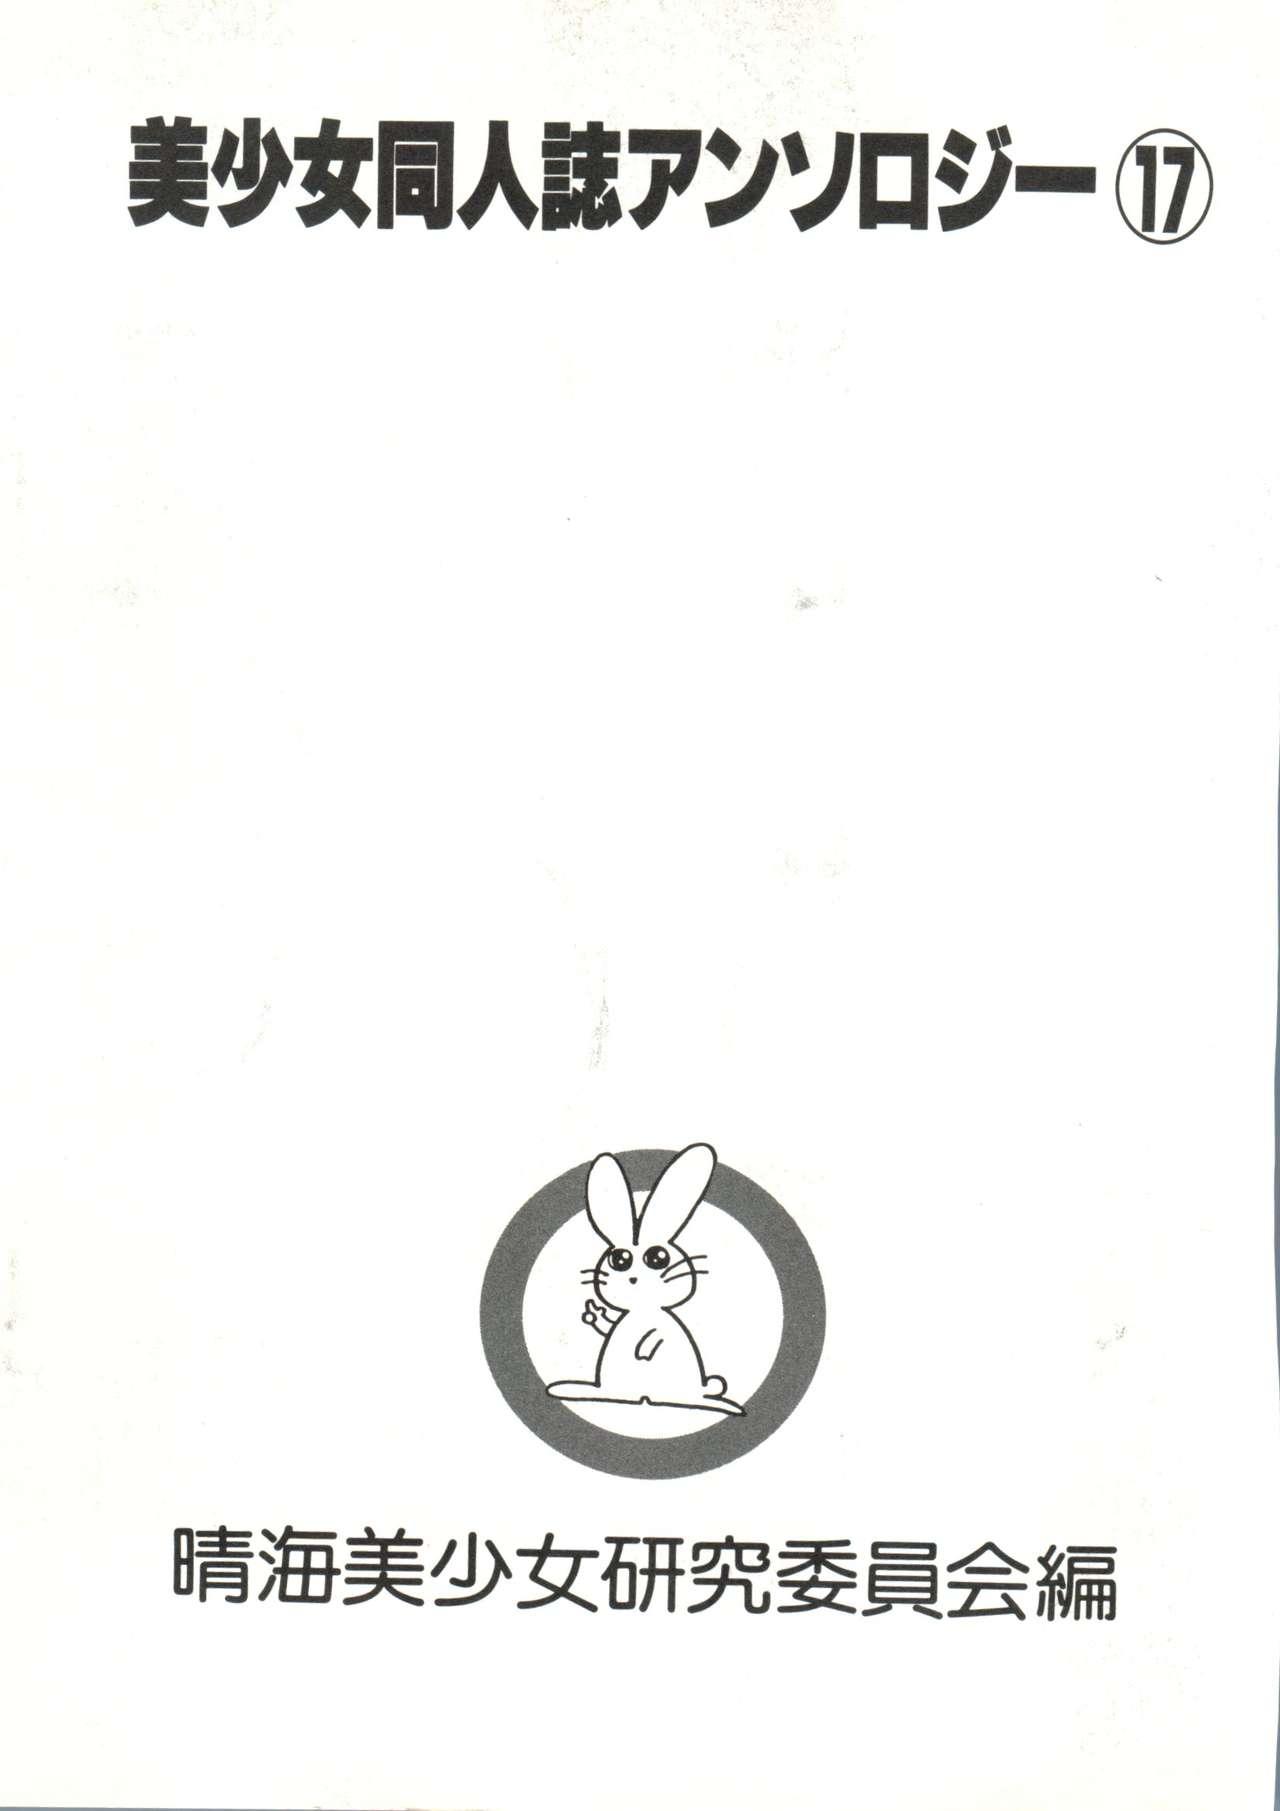 Newbie Bishoujo Doujinshi Anthology 17 - King of fighters Samurai spirits Yu yu hakusho Can can bunny Chilena - Page 5